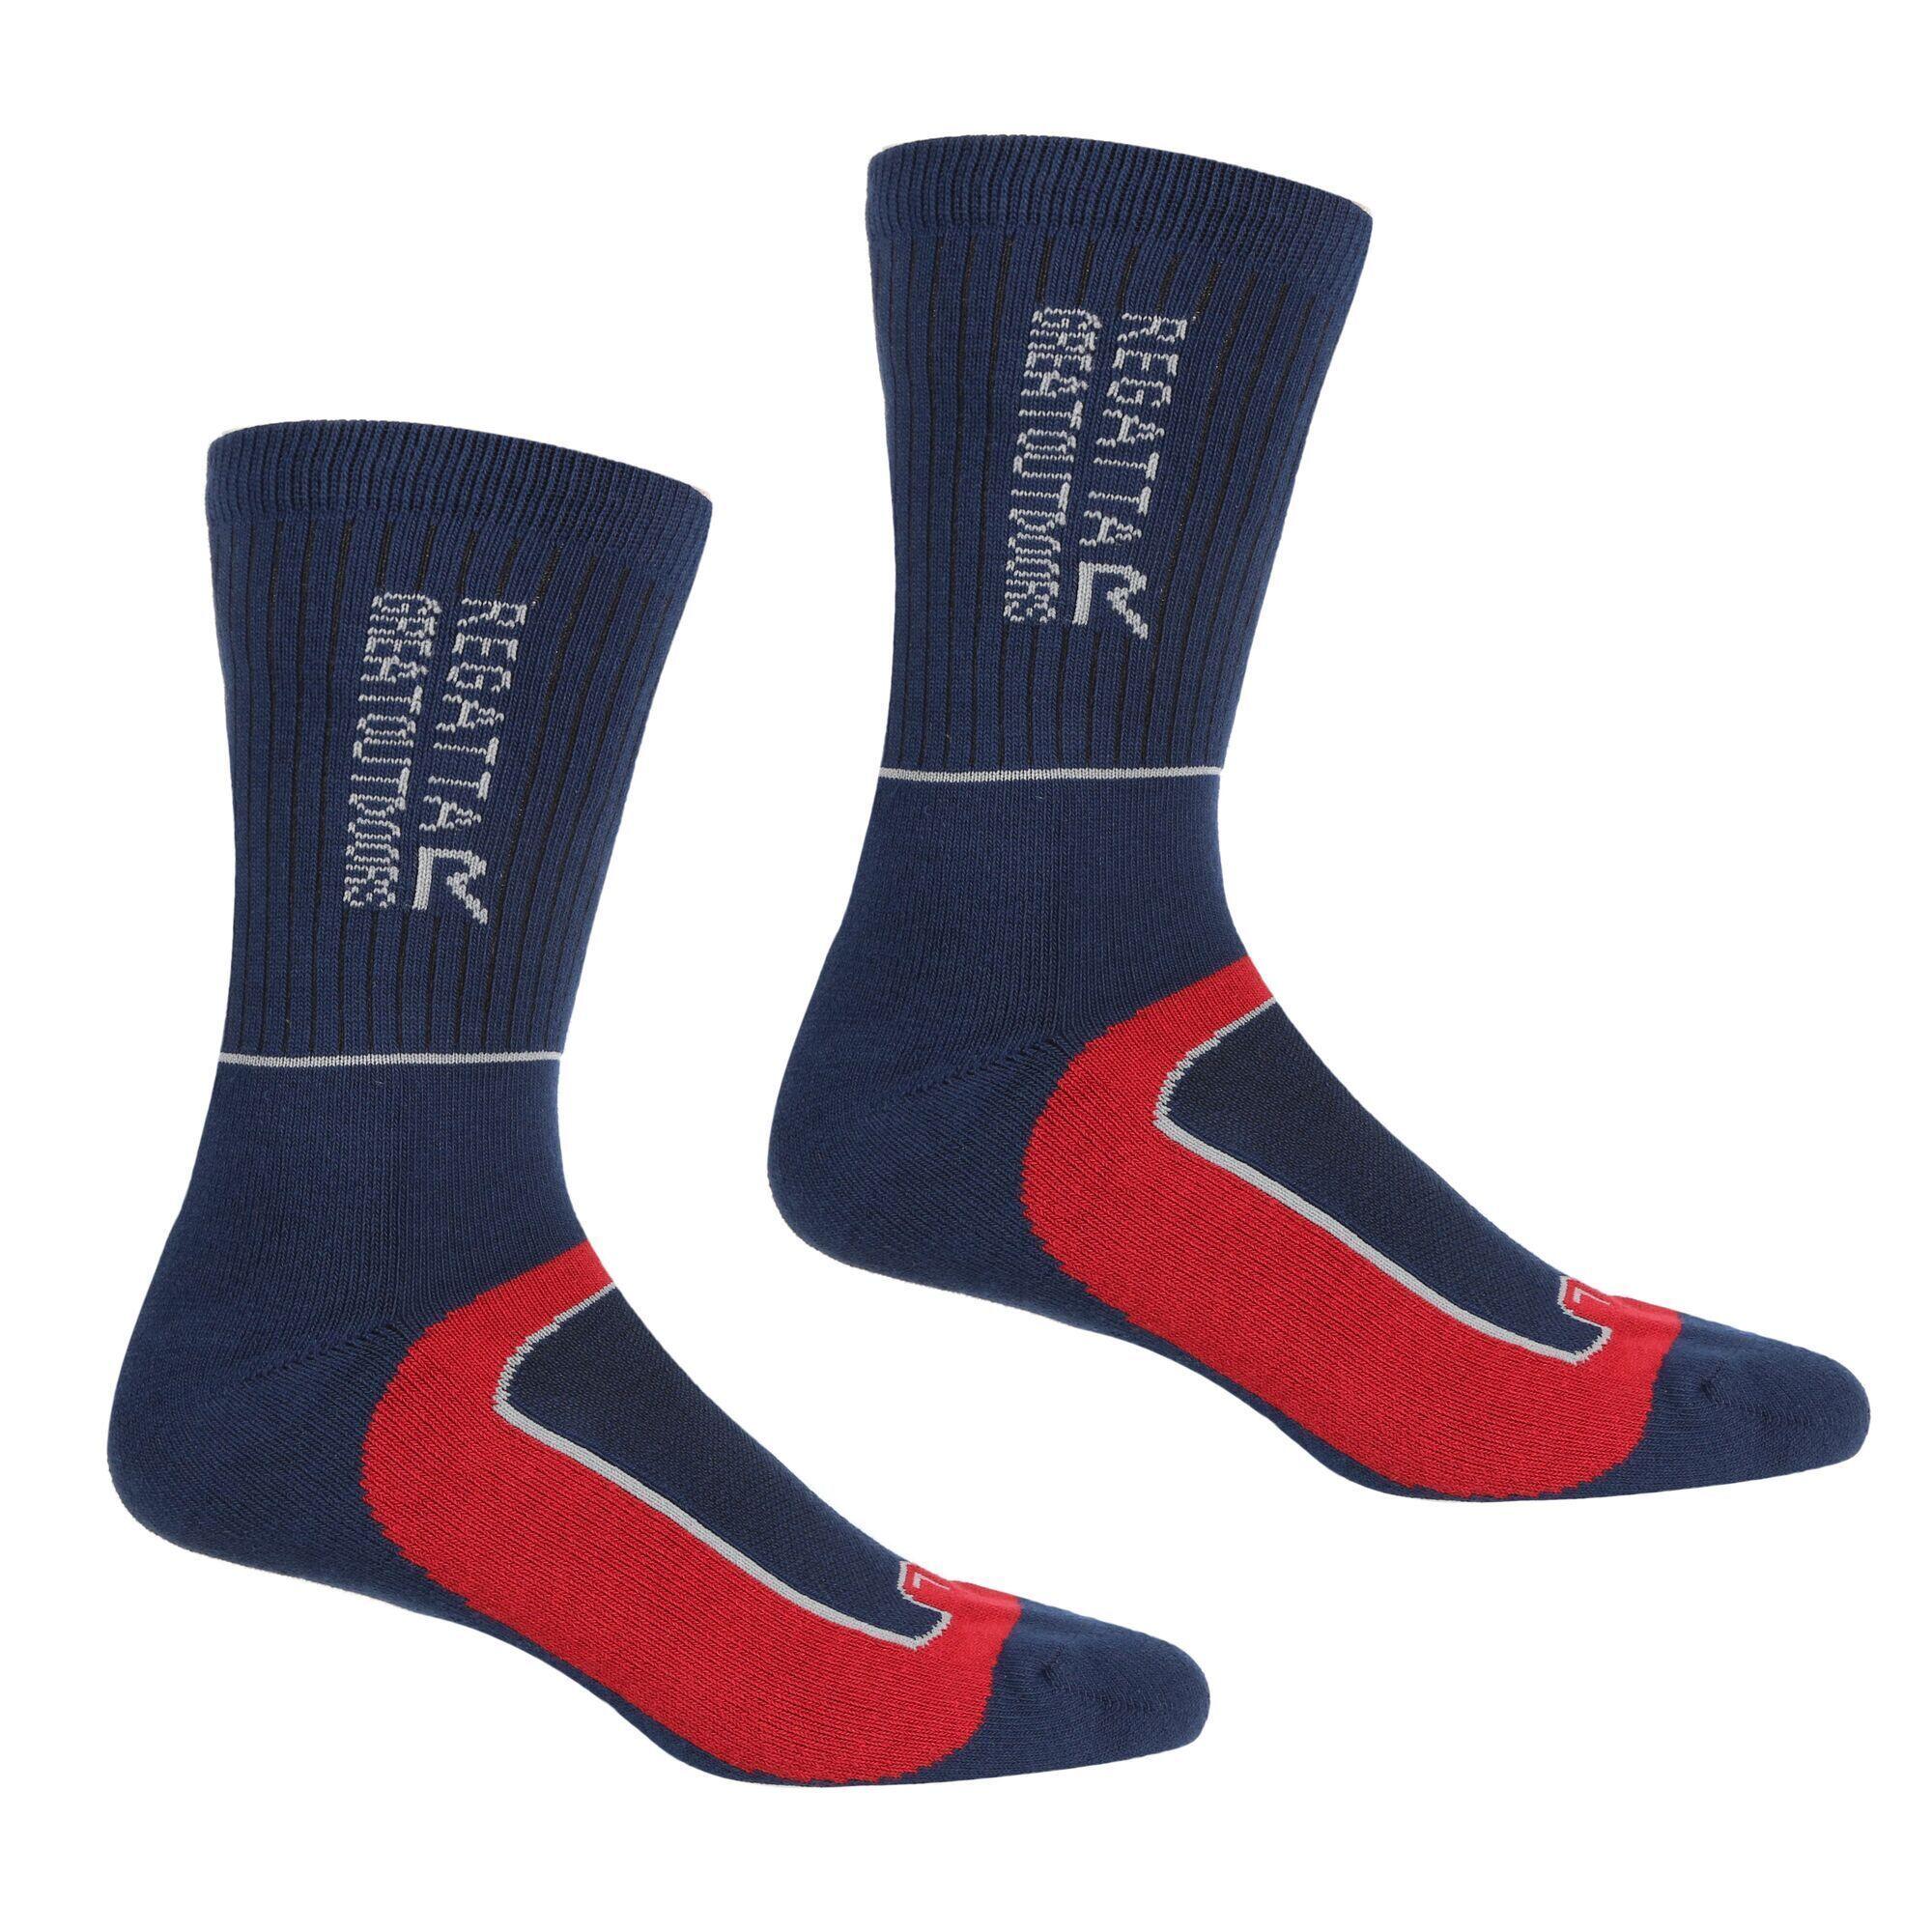 REGATTA Mens Samaris 2 Season Socks (Pack of 2) (Navy/Dark Red)